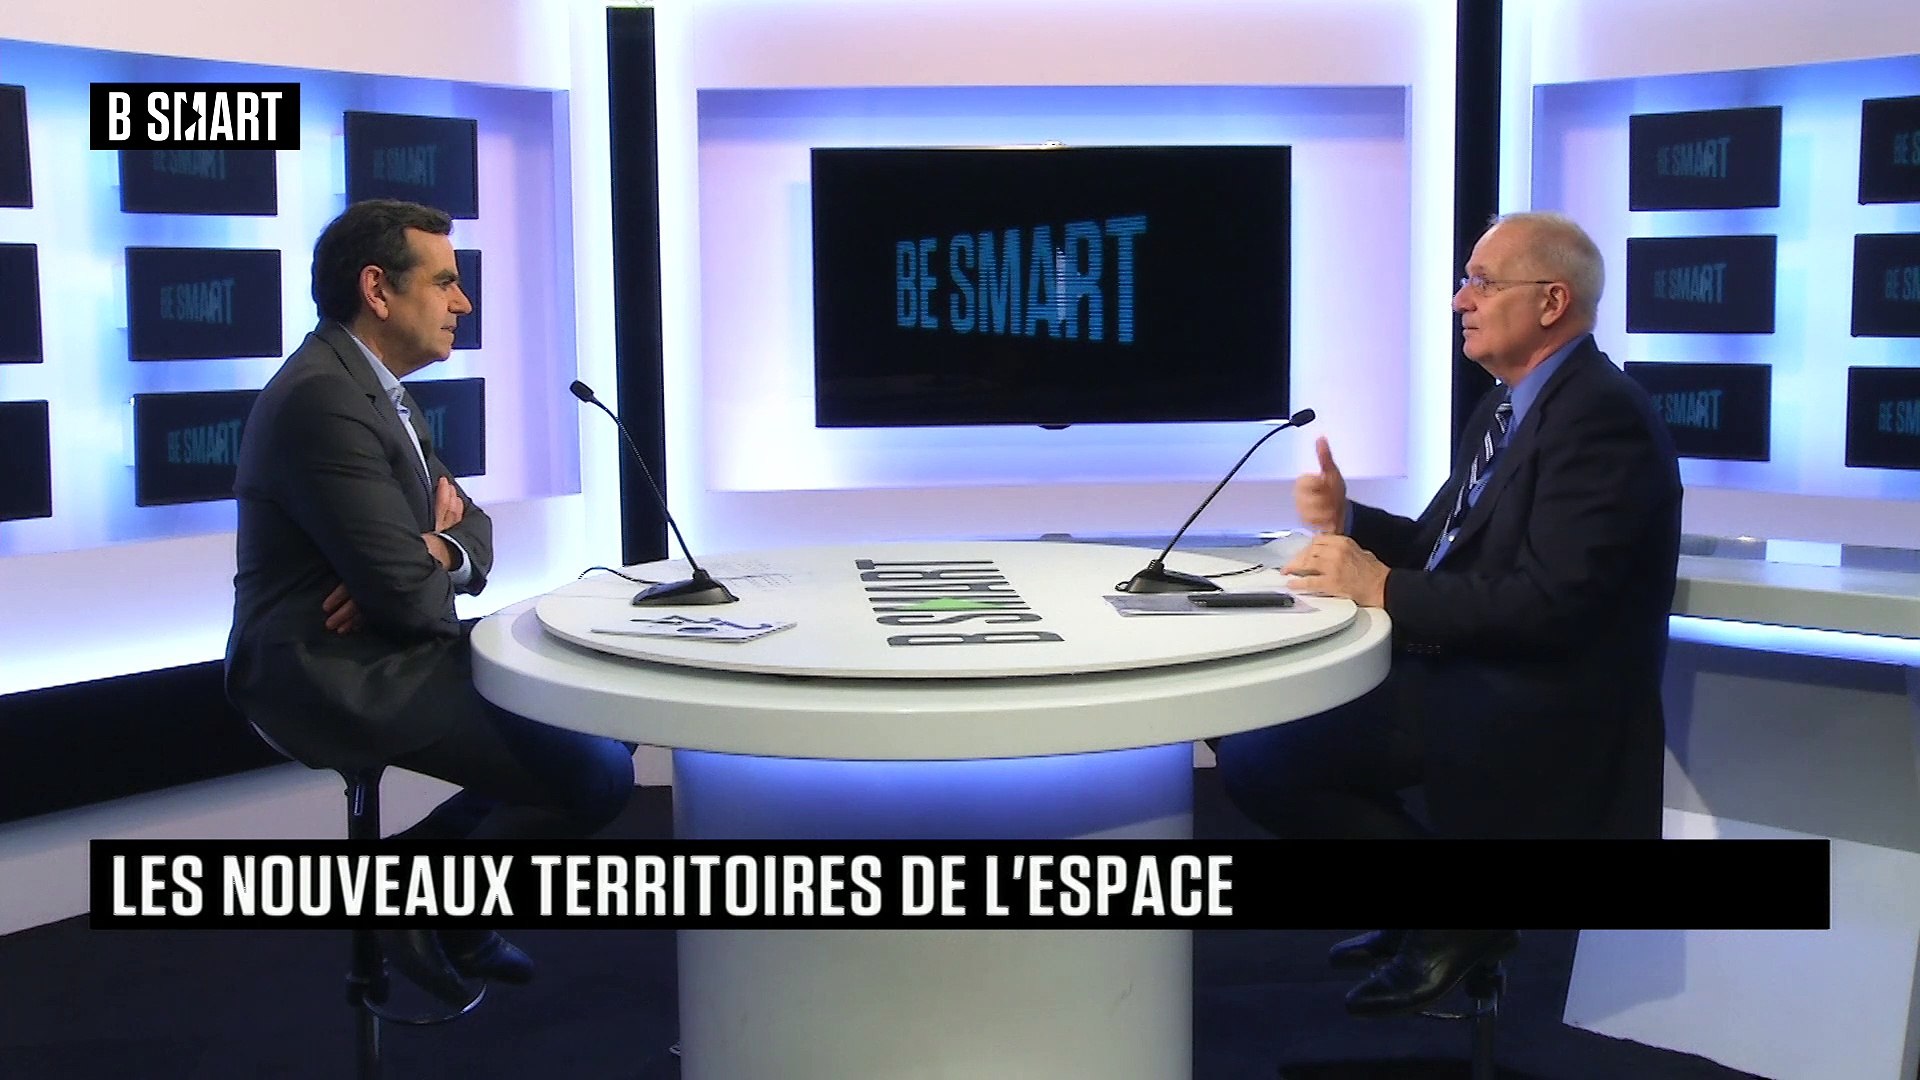 BE SMART - L'interview de Jean-Yves Le Gall (CNES) par Stéphane Soumier -  Vidéo Dailymotion